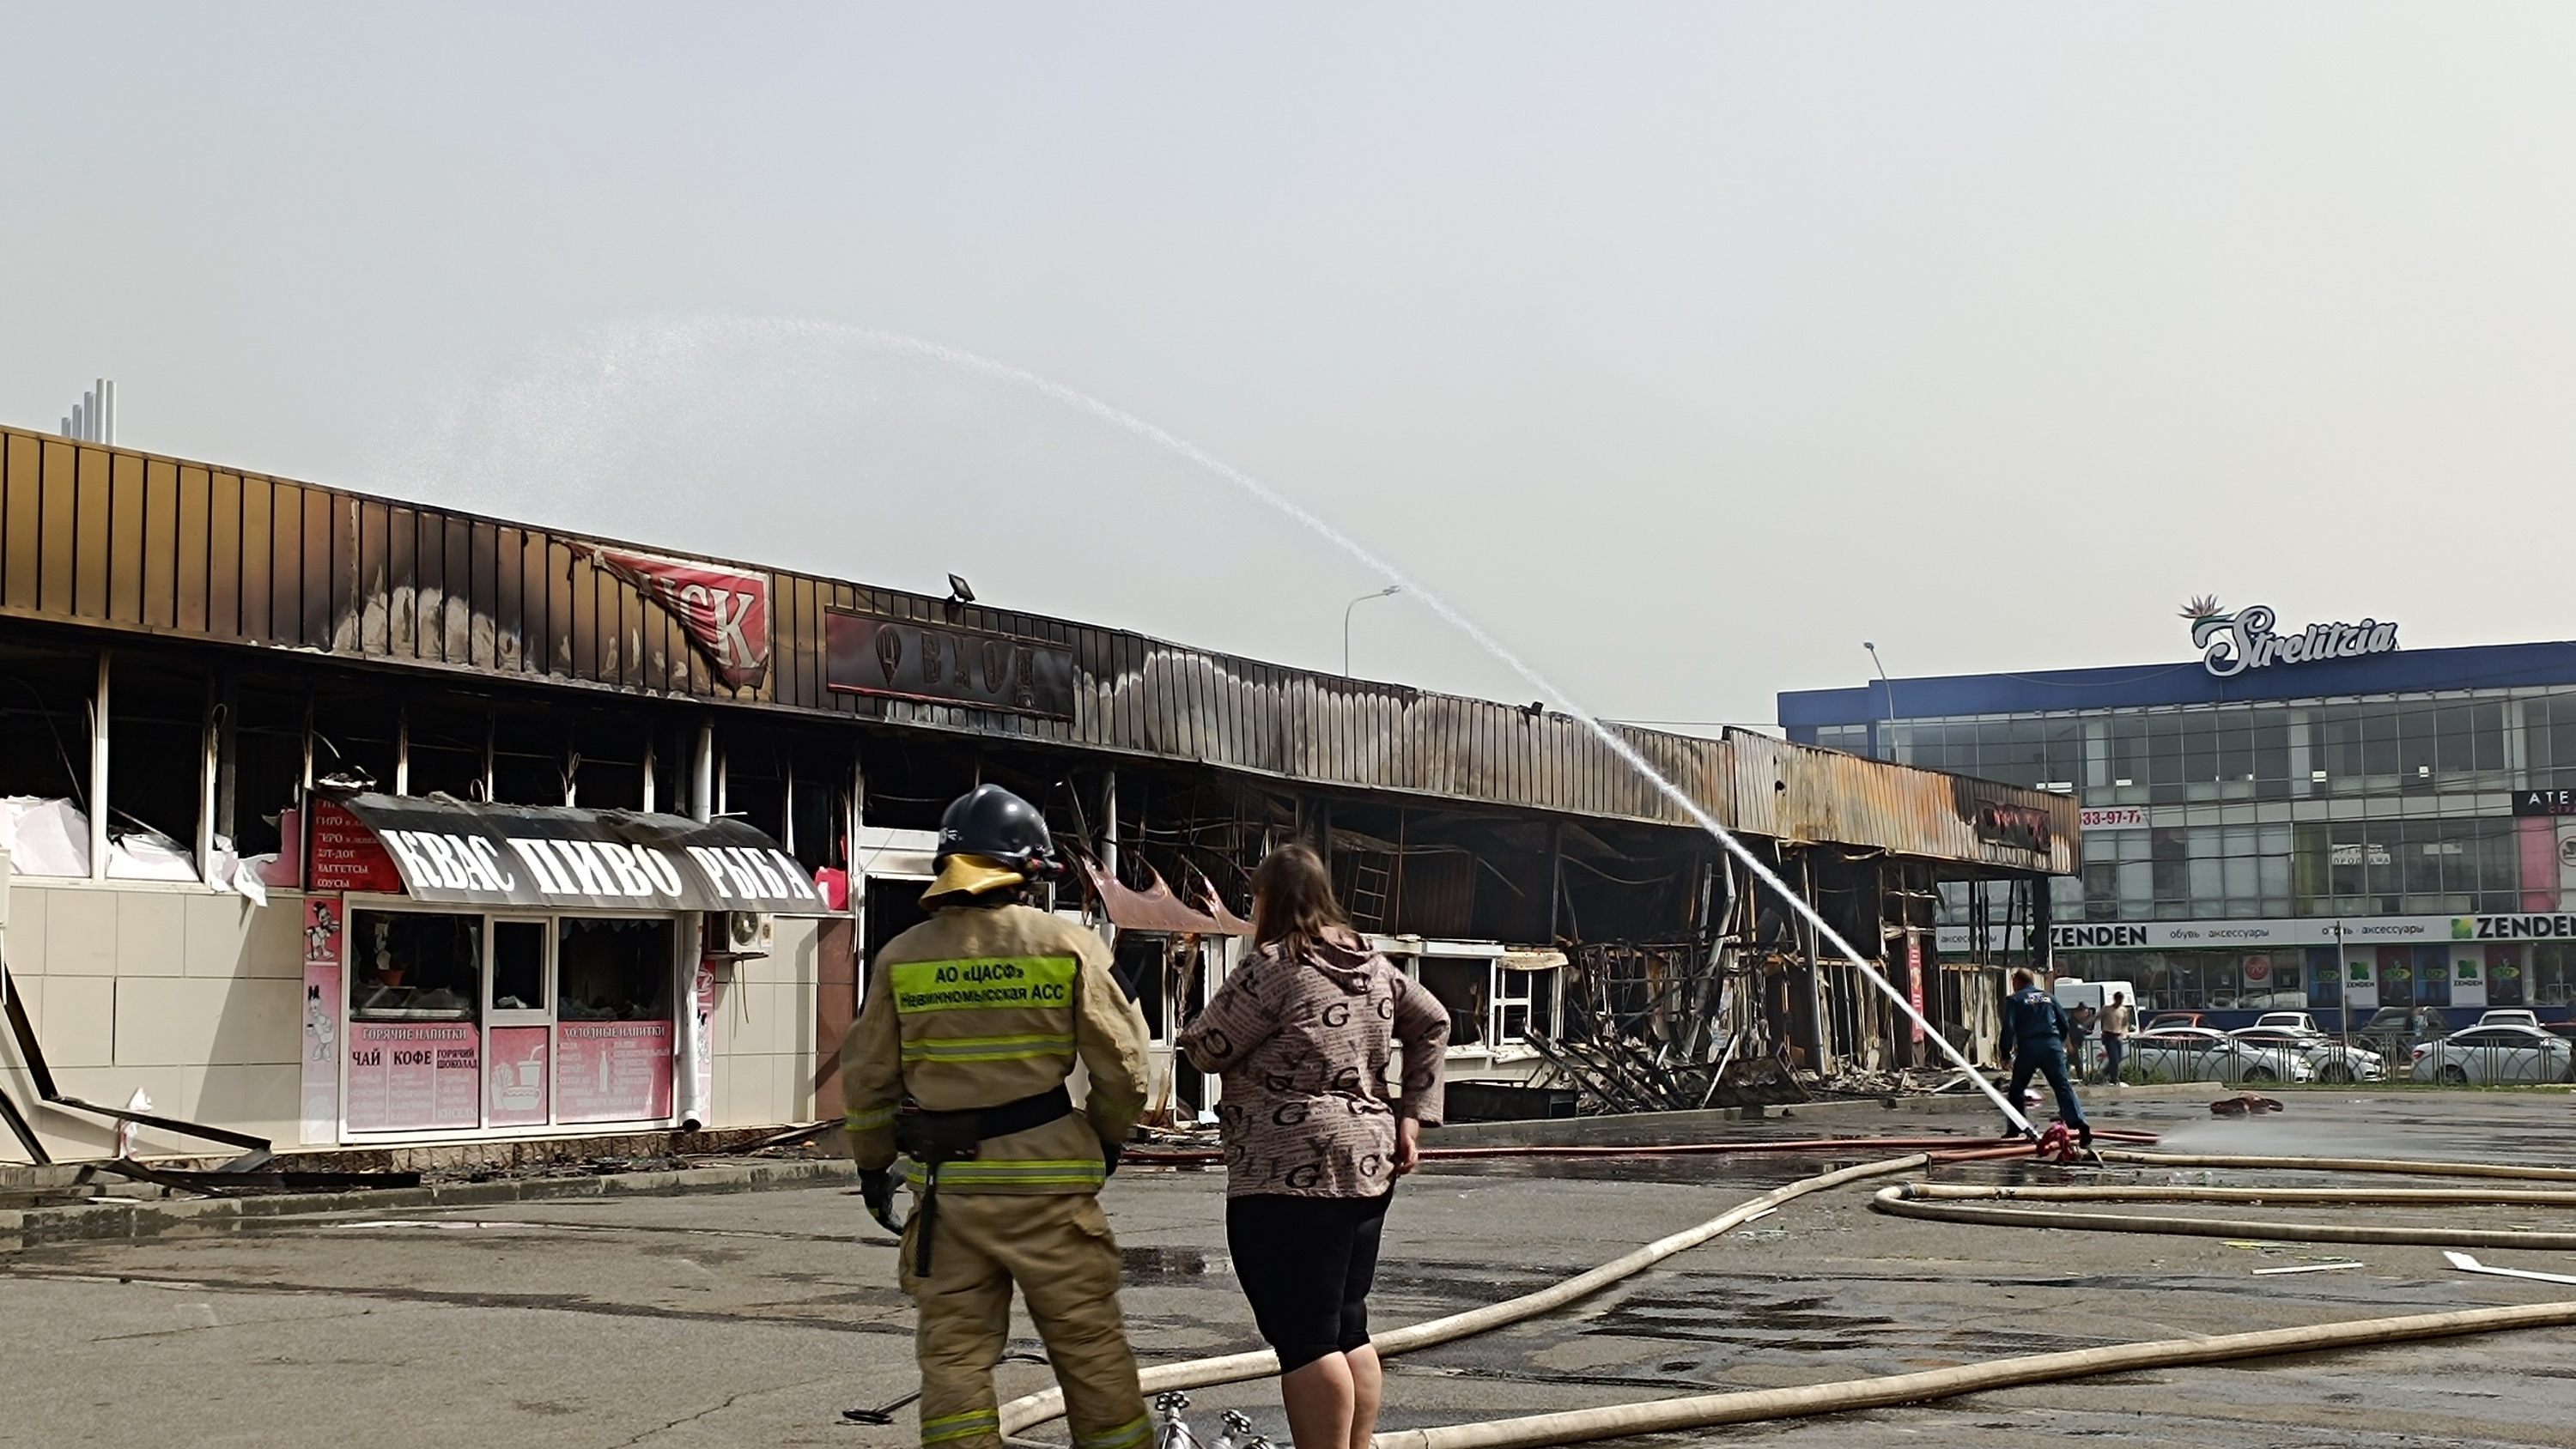 «Сгорело 20 лет жизни»: что происходит на рынке в Невинномысске после страшного пожара